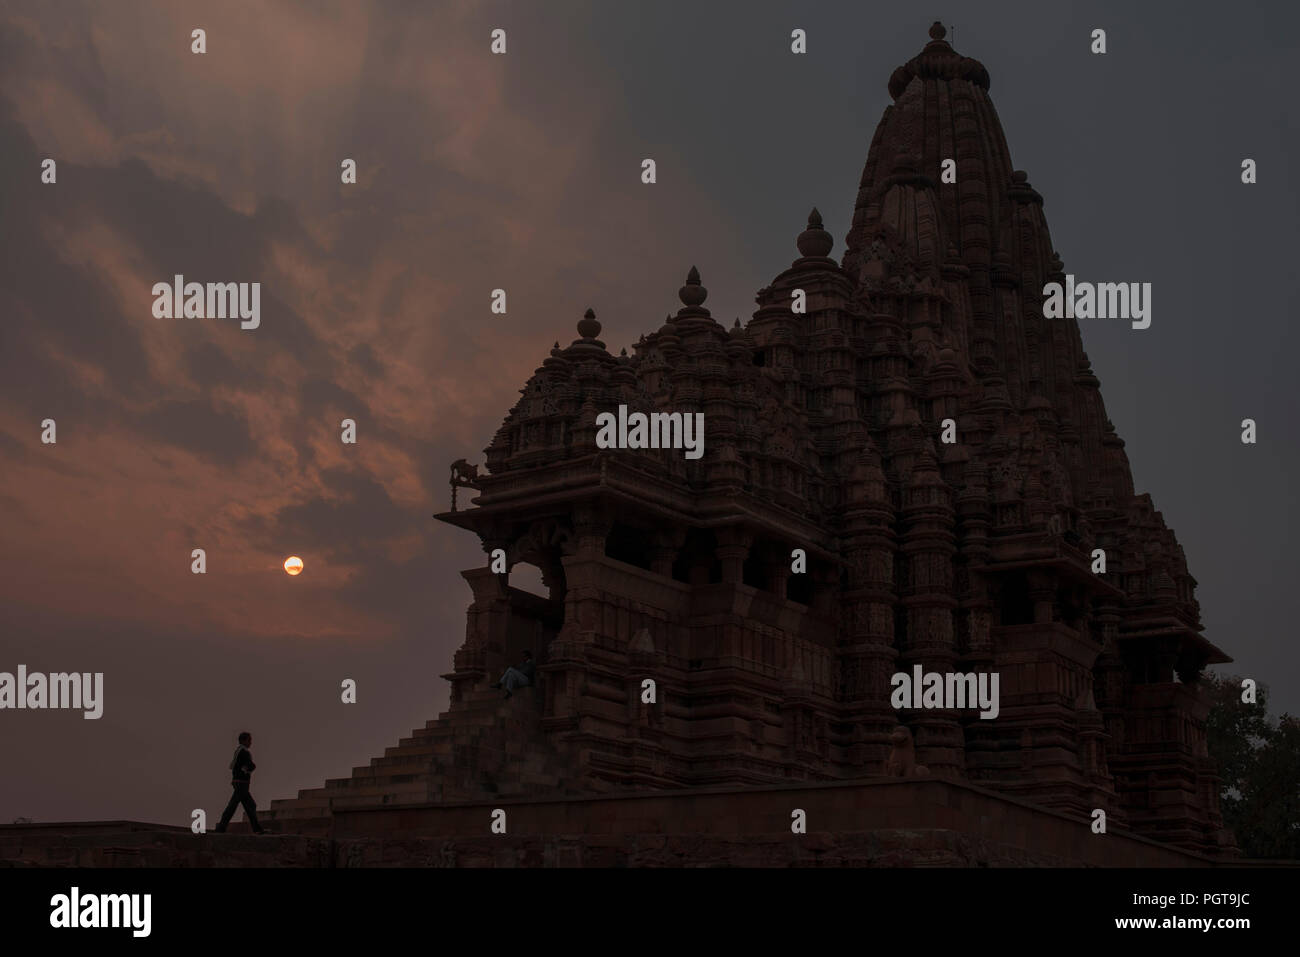 Kandariya Mahadev Tempio con la fantastica architettura di pietra arenaria sculture e incisioni dedicato al dio Shiva il dio indù di potenza nel tramonto Foto Stock